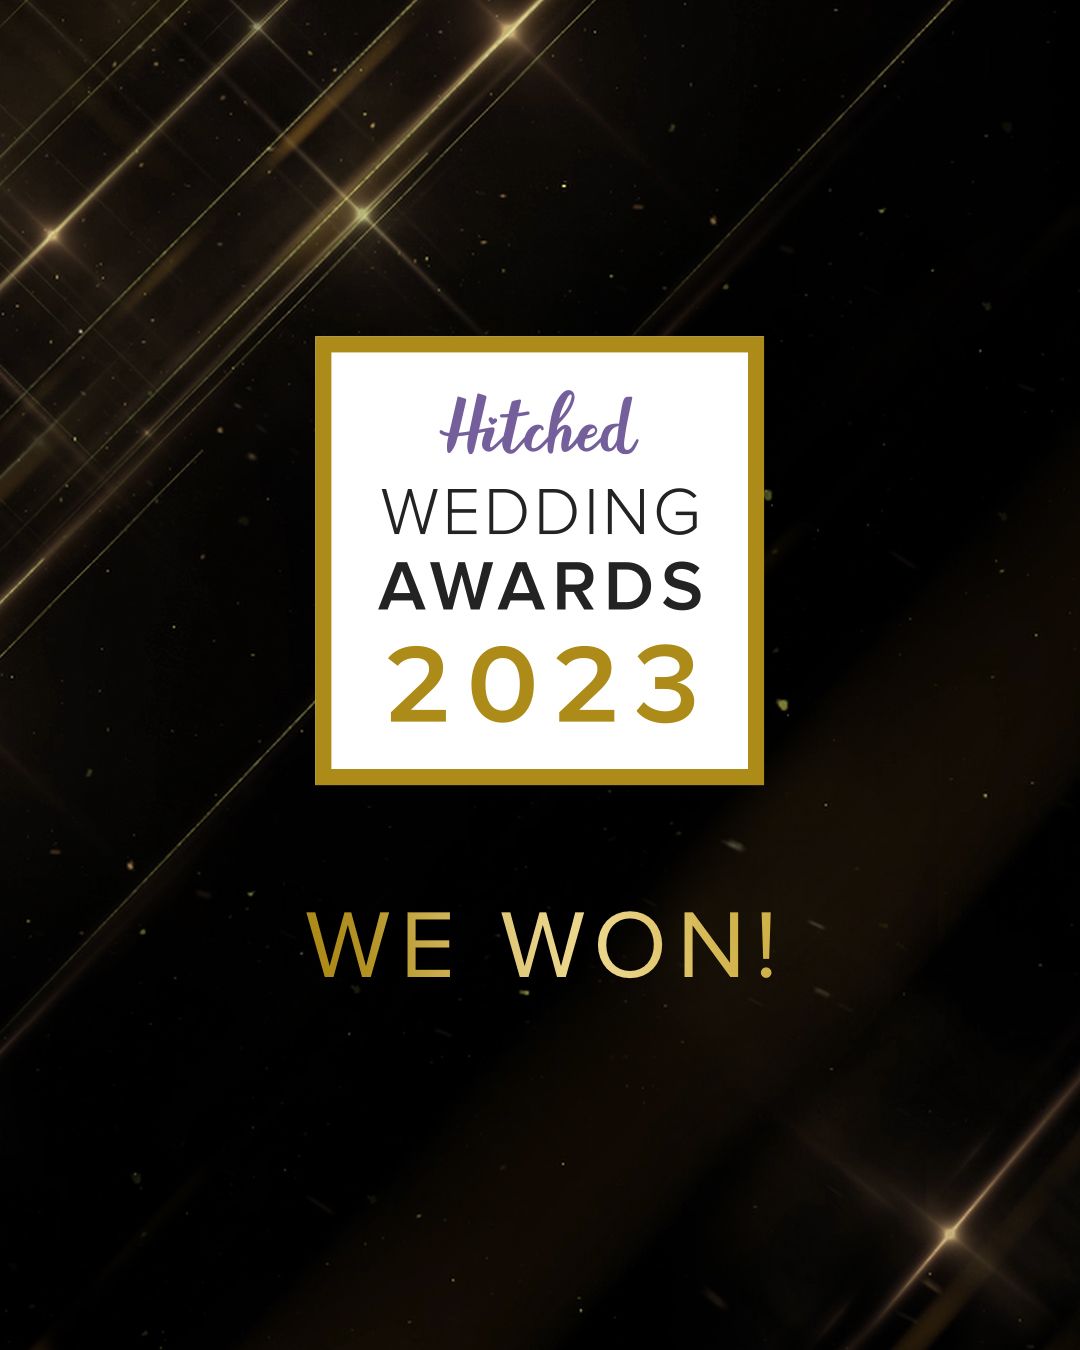 Hitched Wedding Awards 2023